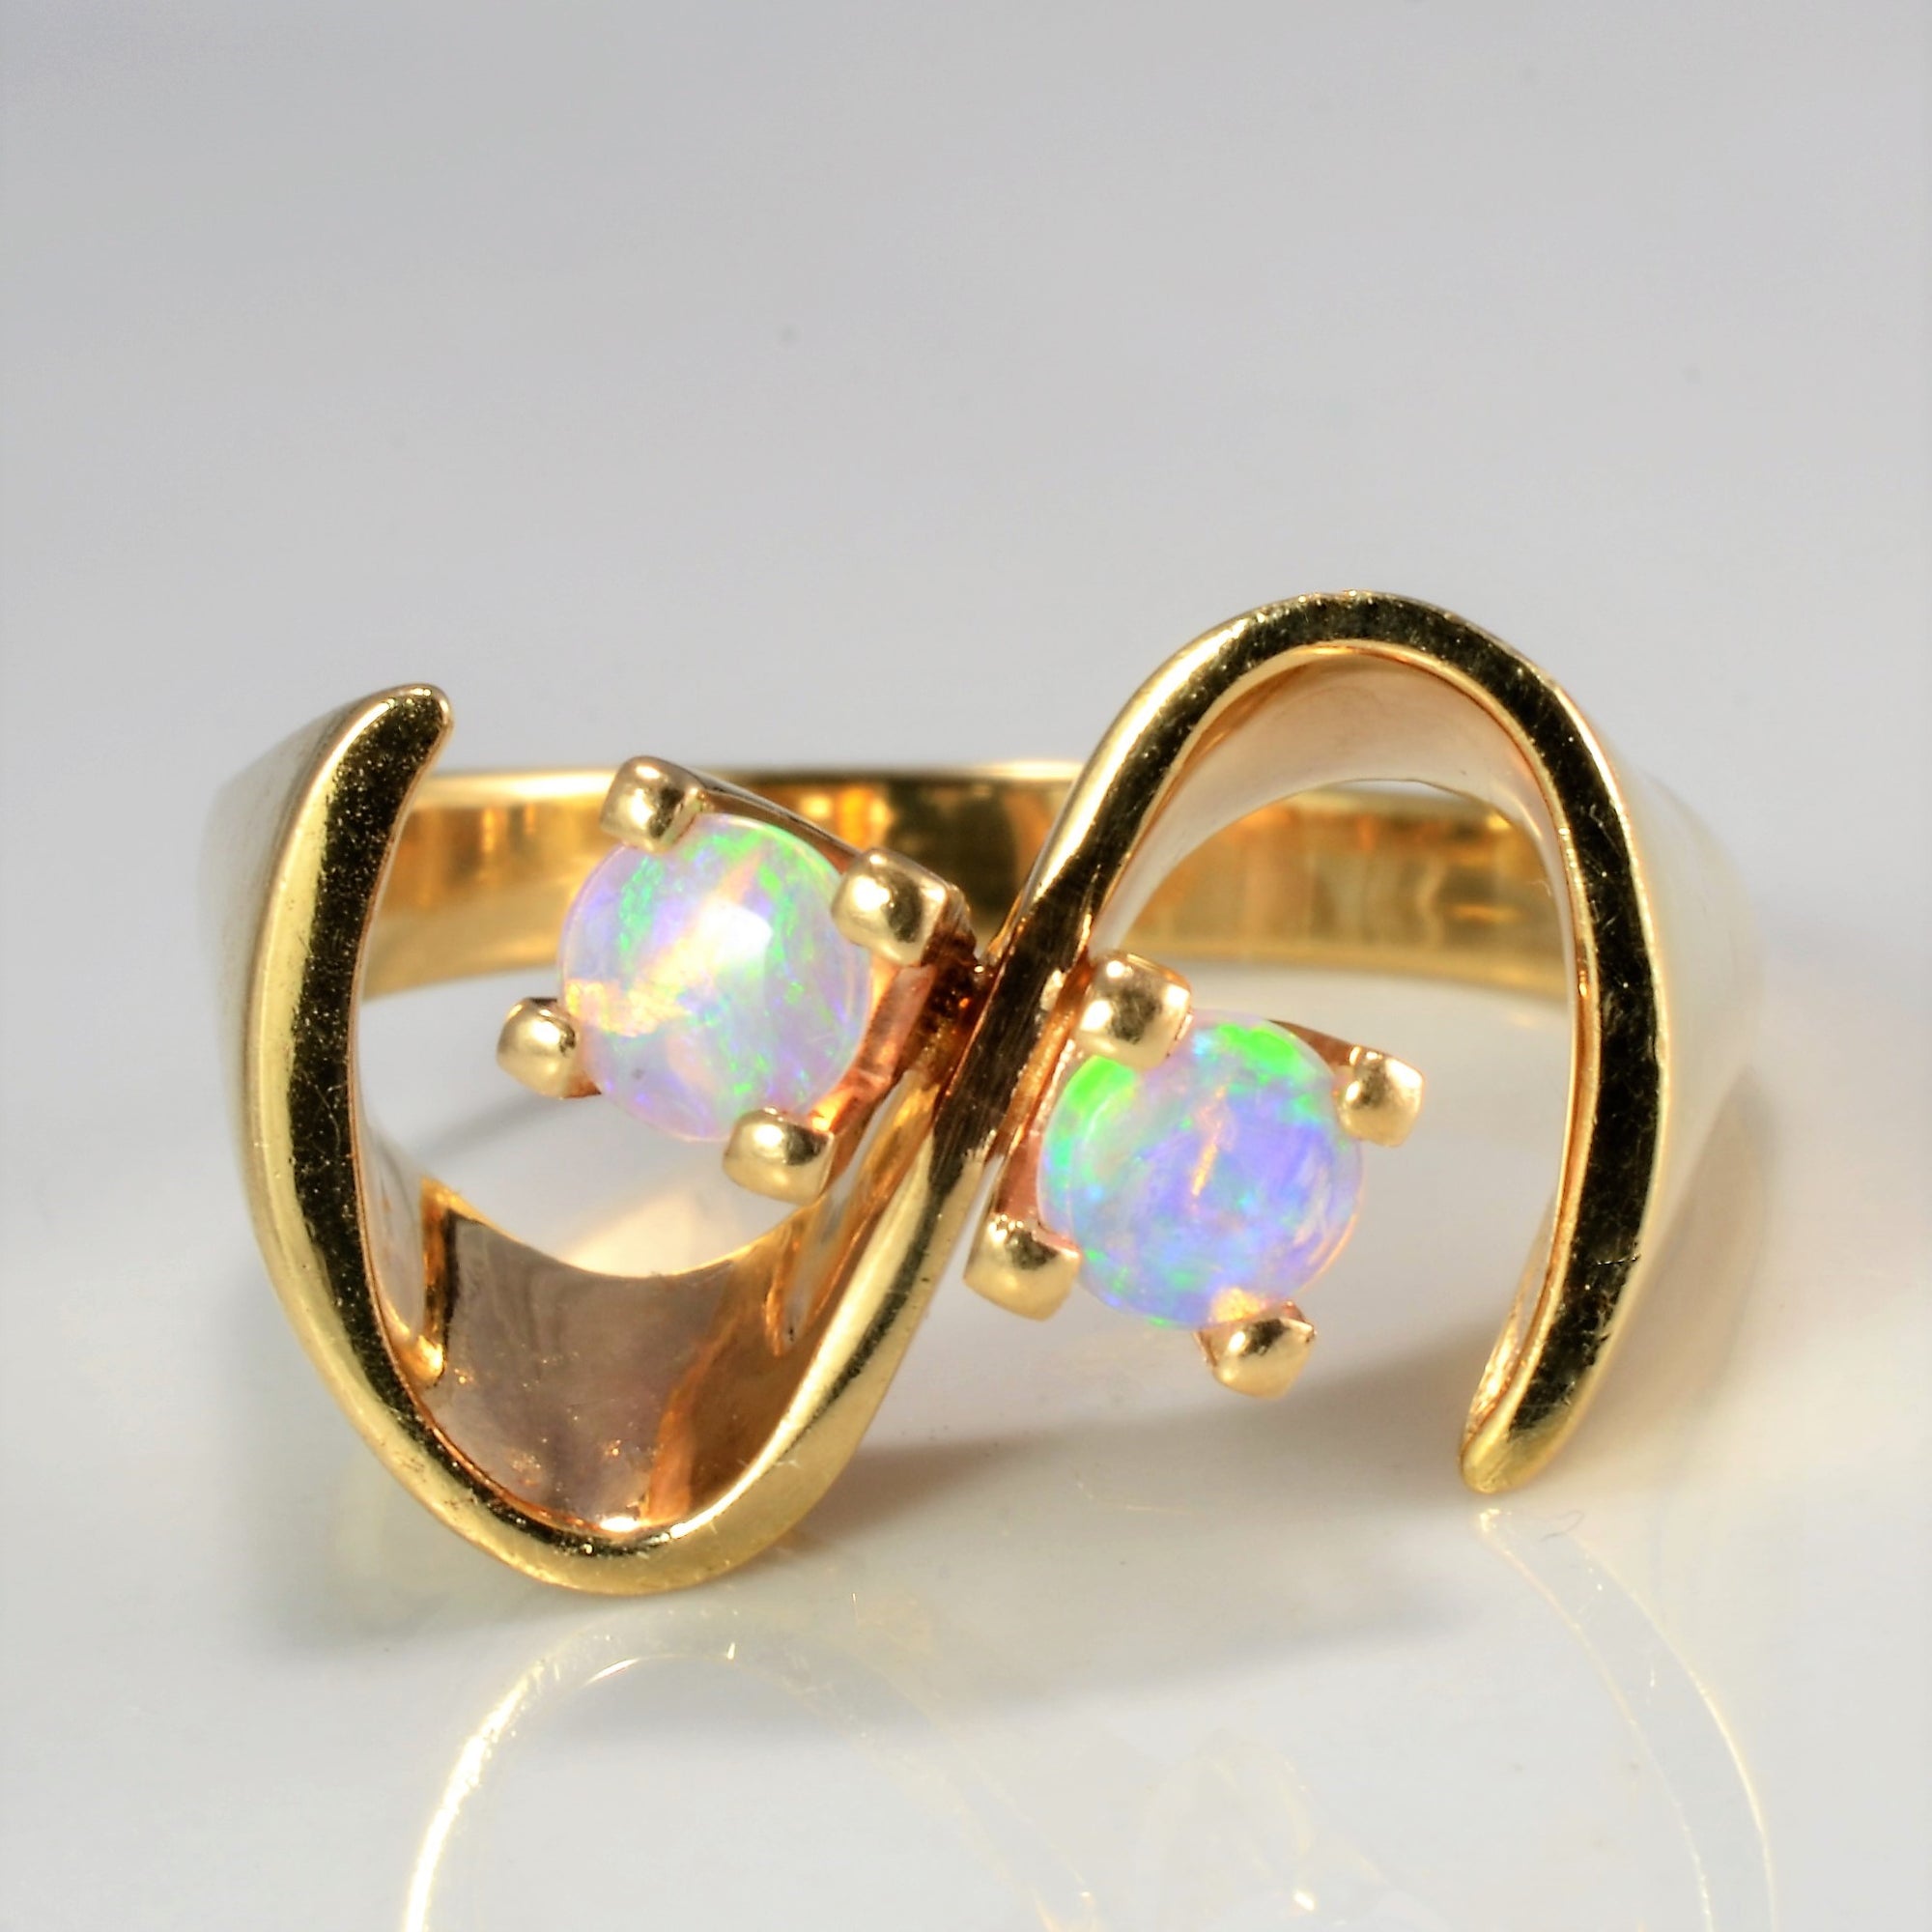 High Set Opal Textured Ring | SZ 8.25 |